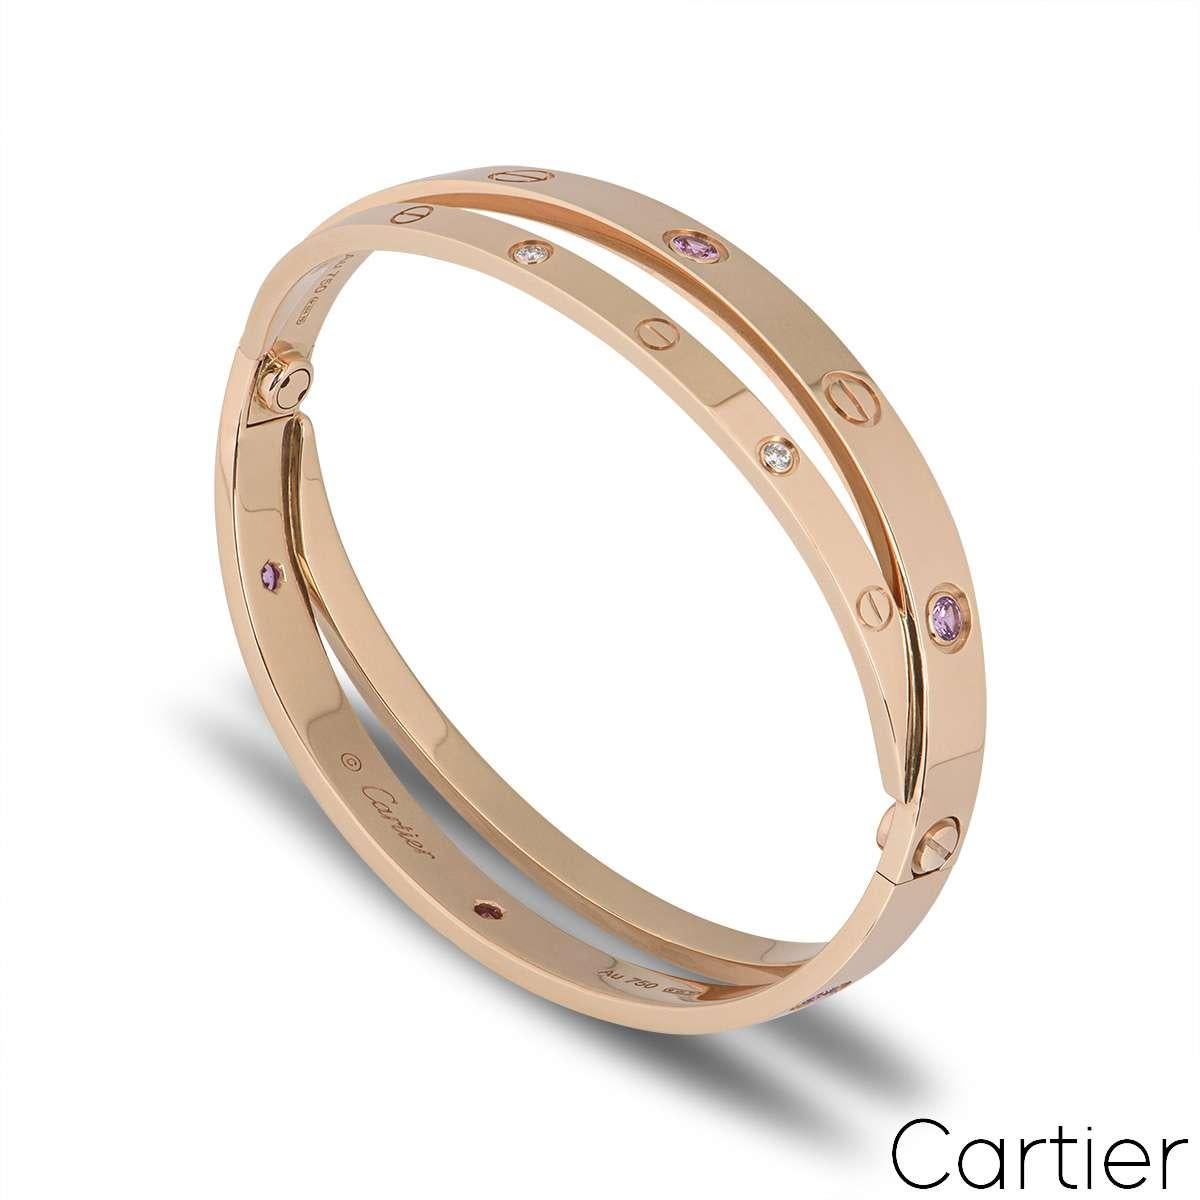 Ein doppeltes Cartier-Armband aus 18 Karat Roségold mit einem halben Diamanten und einem rosafarbenen Saphir, aus der Kollektion Love. Mit dem ikonischen Cartier-Schraubenmotiv, das sich mit 6 runden Diamanten im Brillantschliff und 6 rosafarbenen